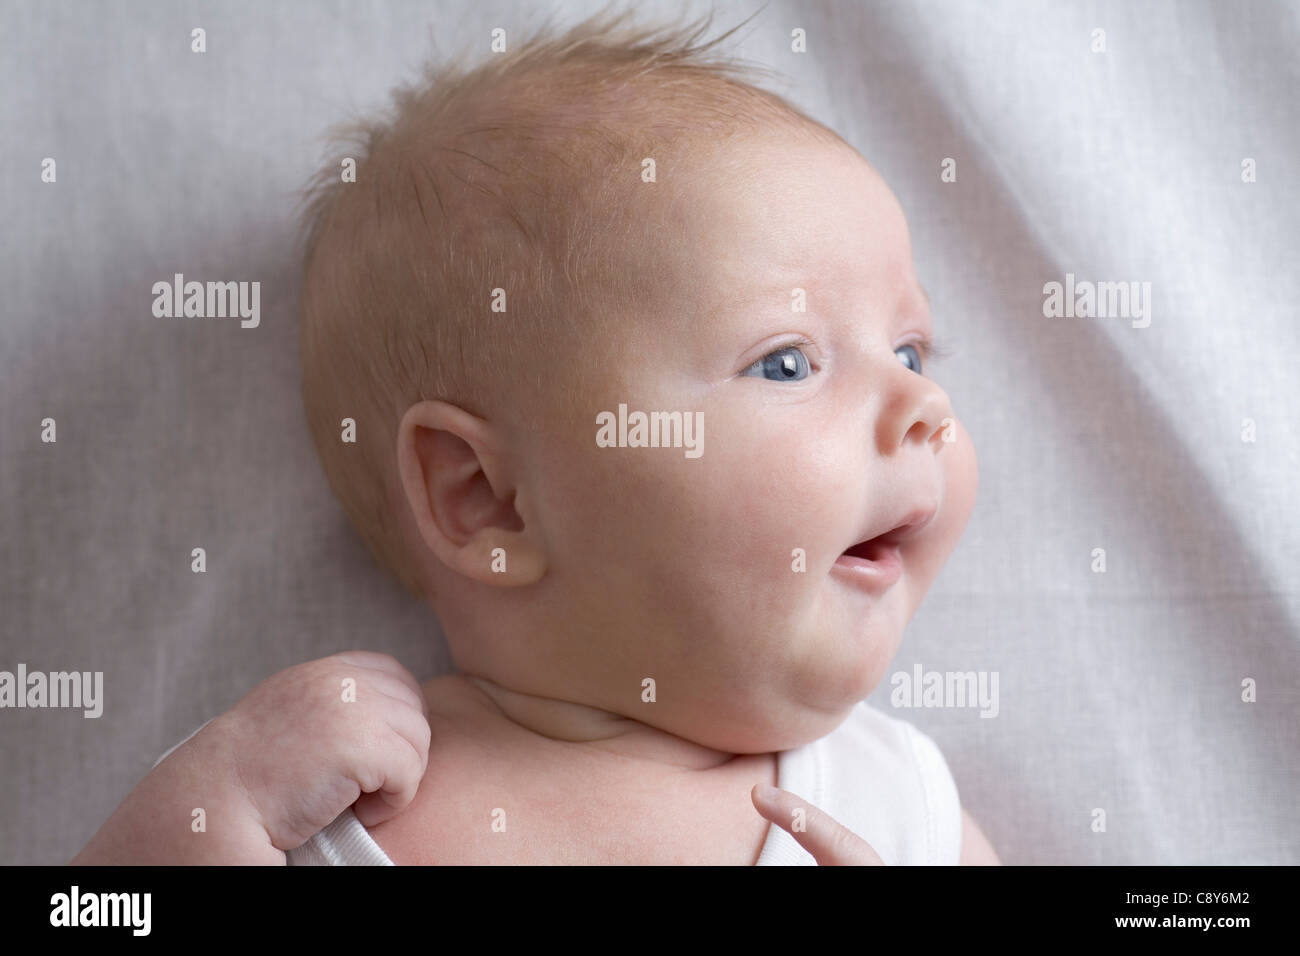 headshot of young baby boy Stock Photo